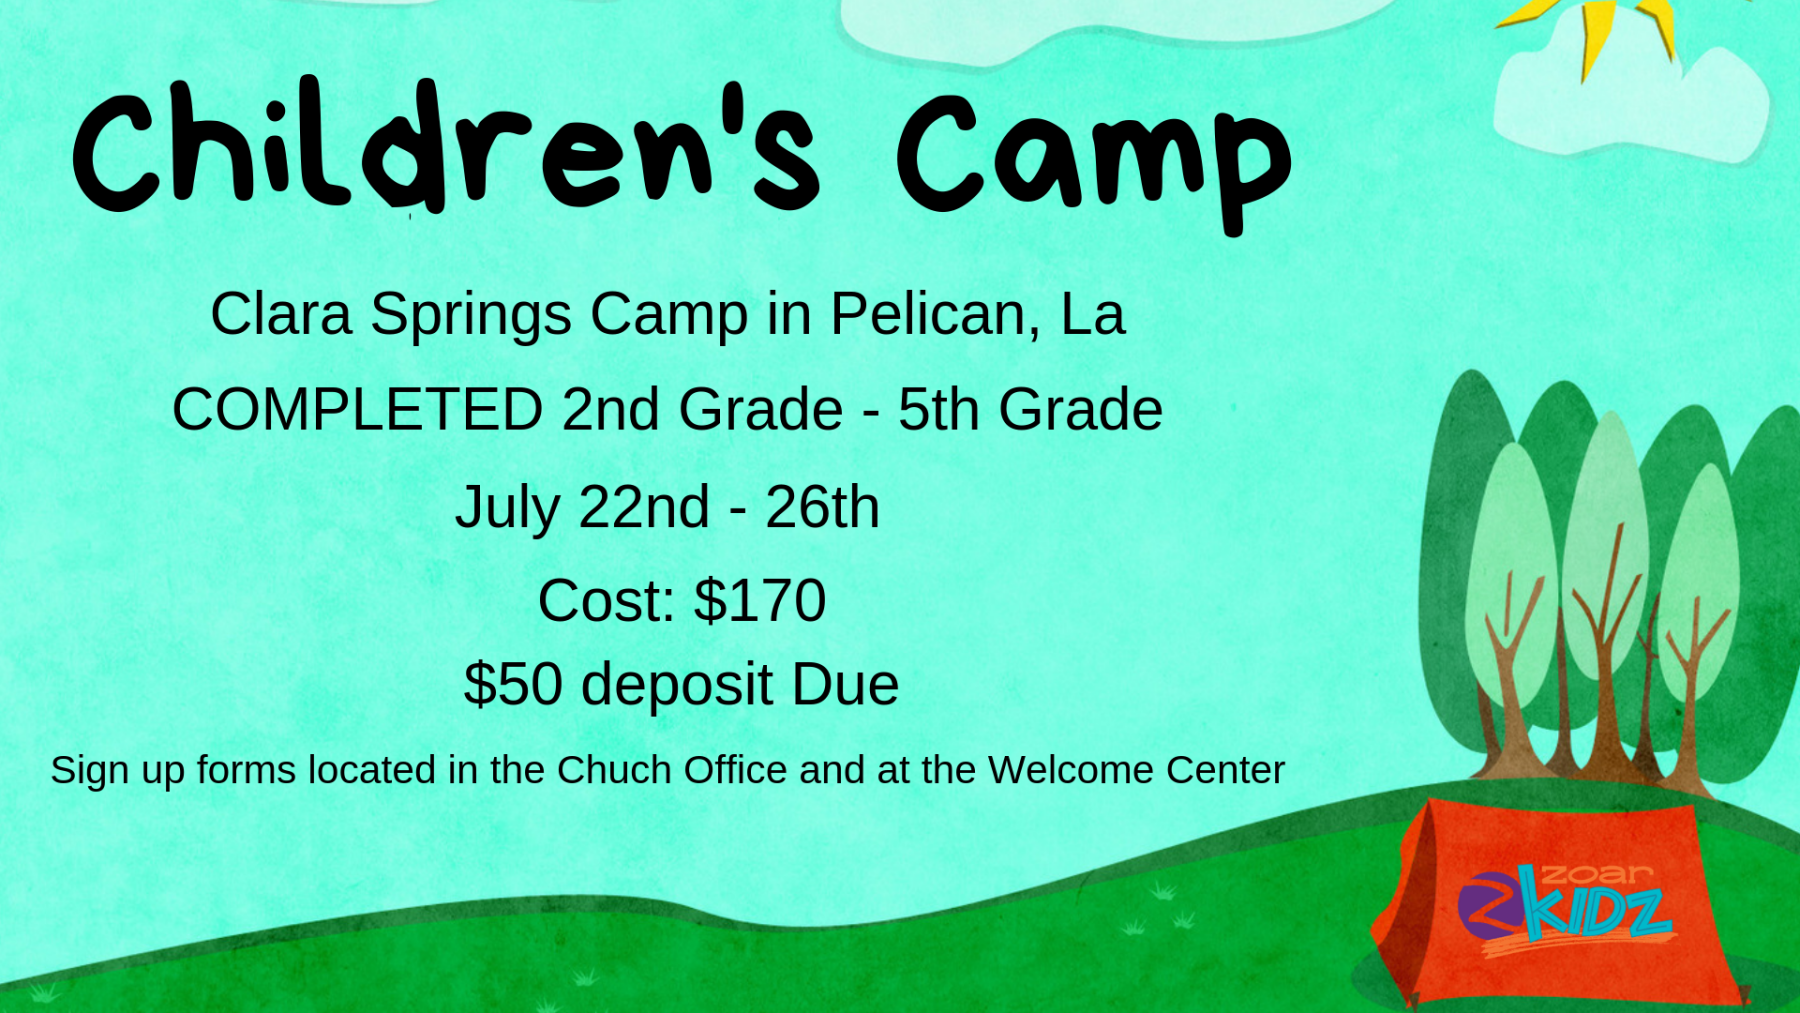 Children's Camp